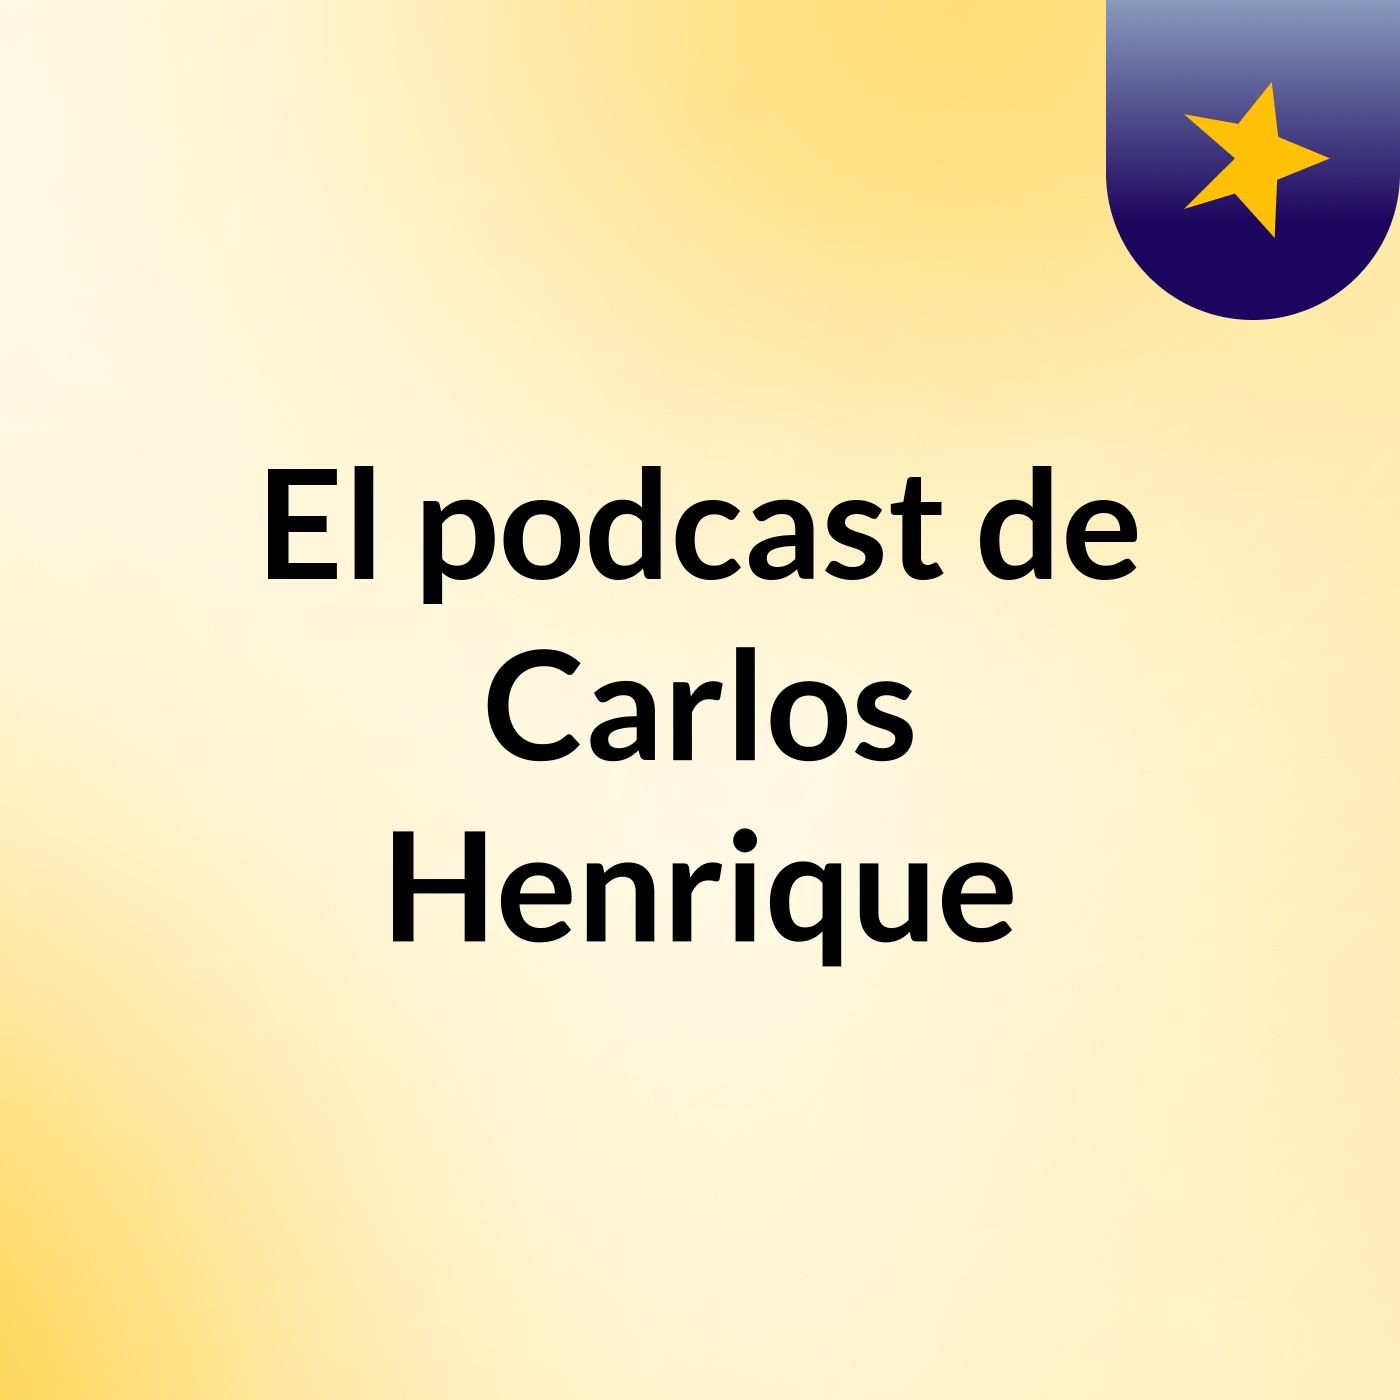 Episodio 19 - El podcast de Carlos Henrique